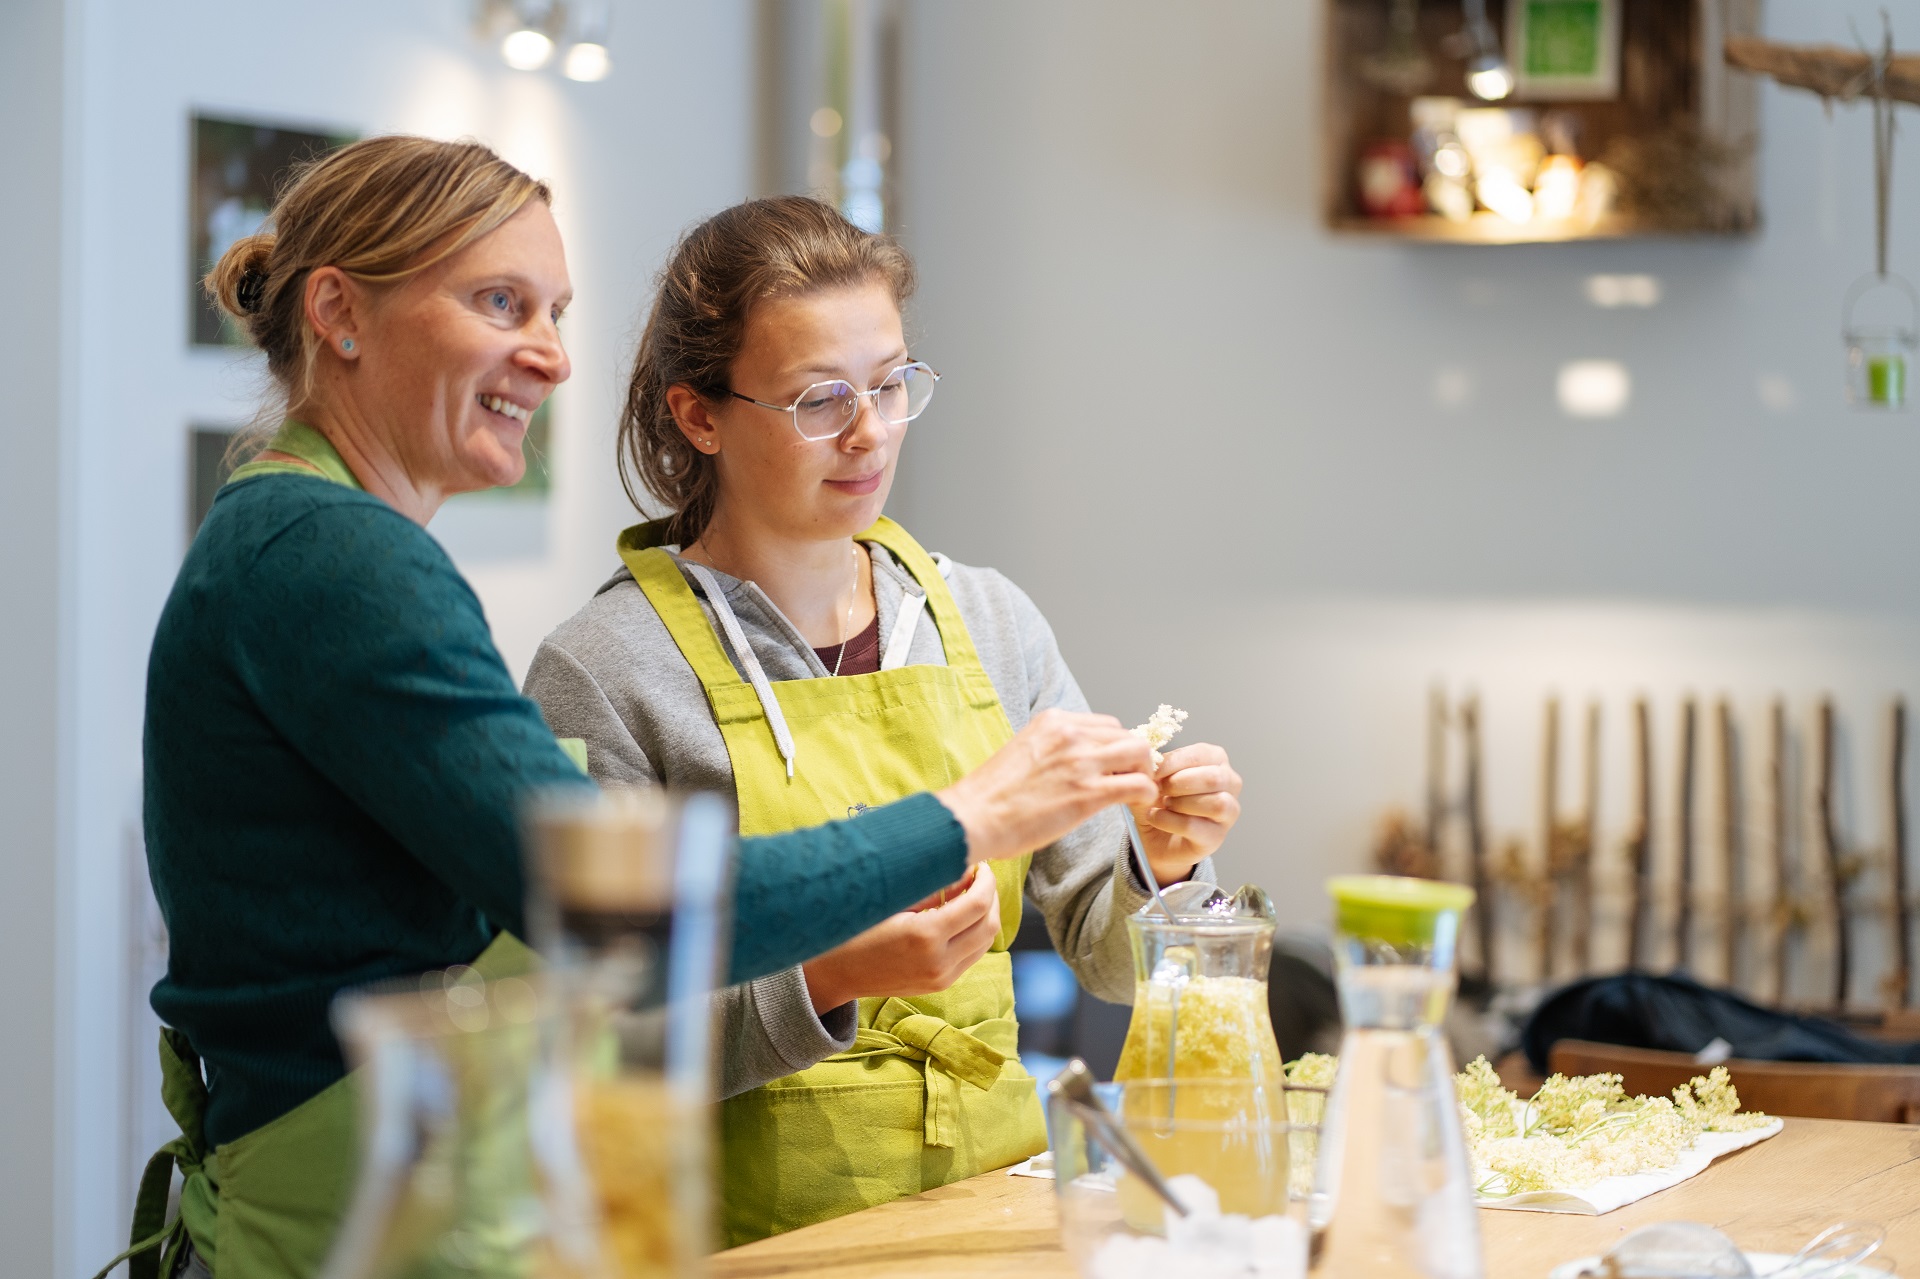 Karin Laschet und eine junge Frau zusammn in der Küche beim Weiterverarbeiten der Kräuter. Beide sind am Lächeln.